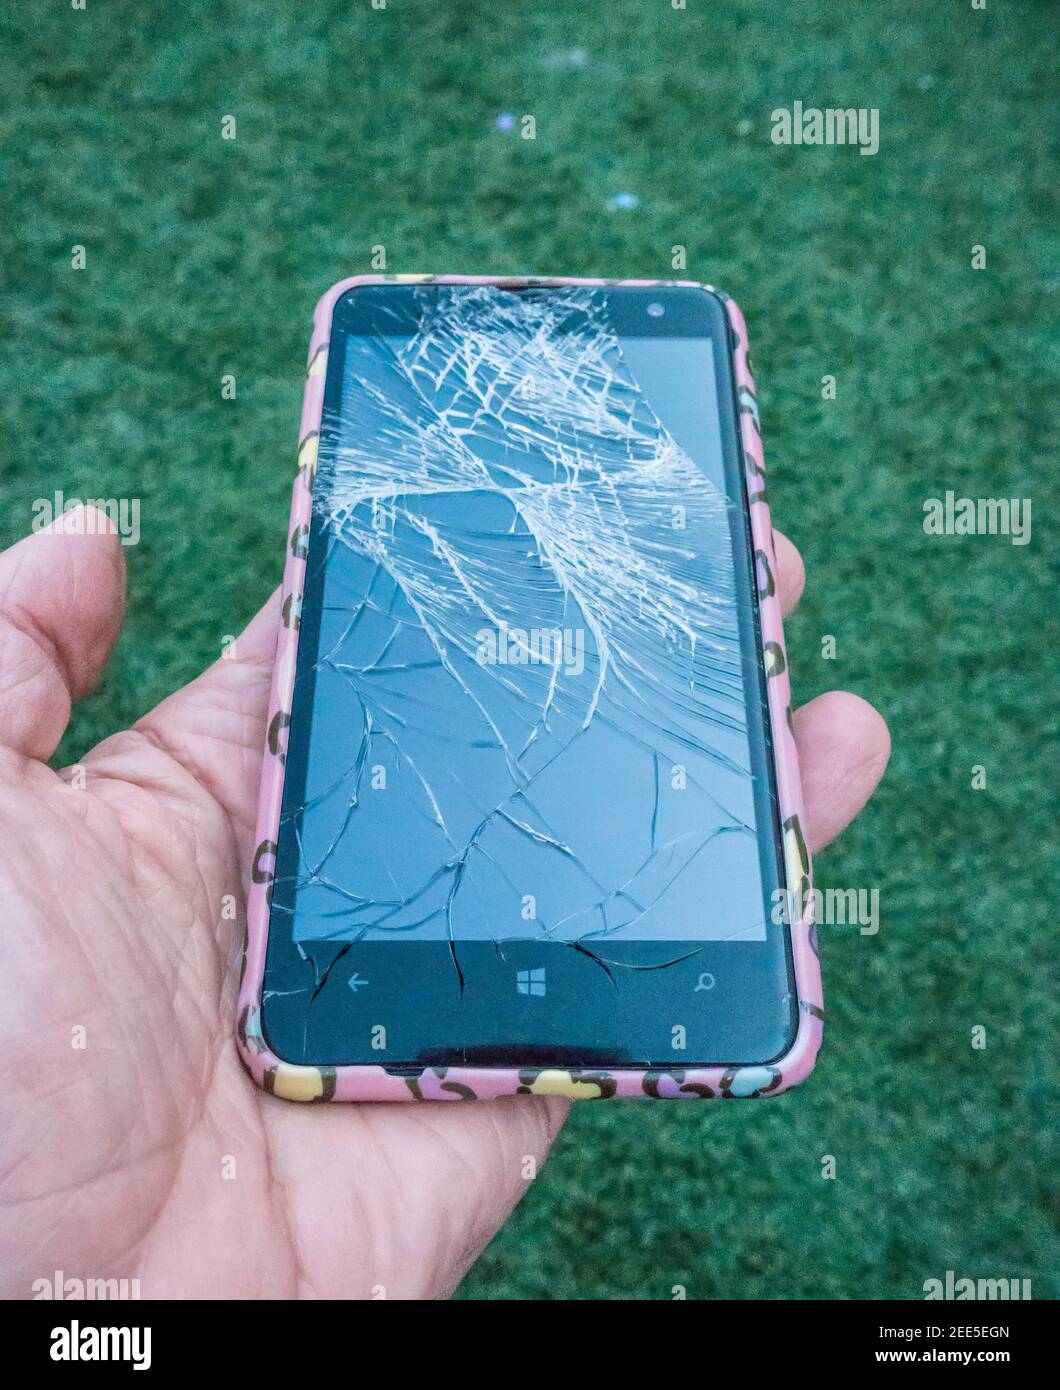 smartphone with broken screen Stock Photo